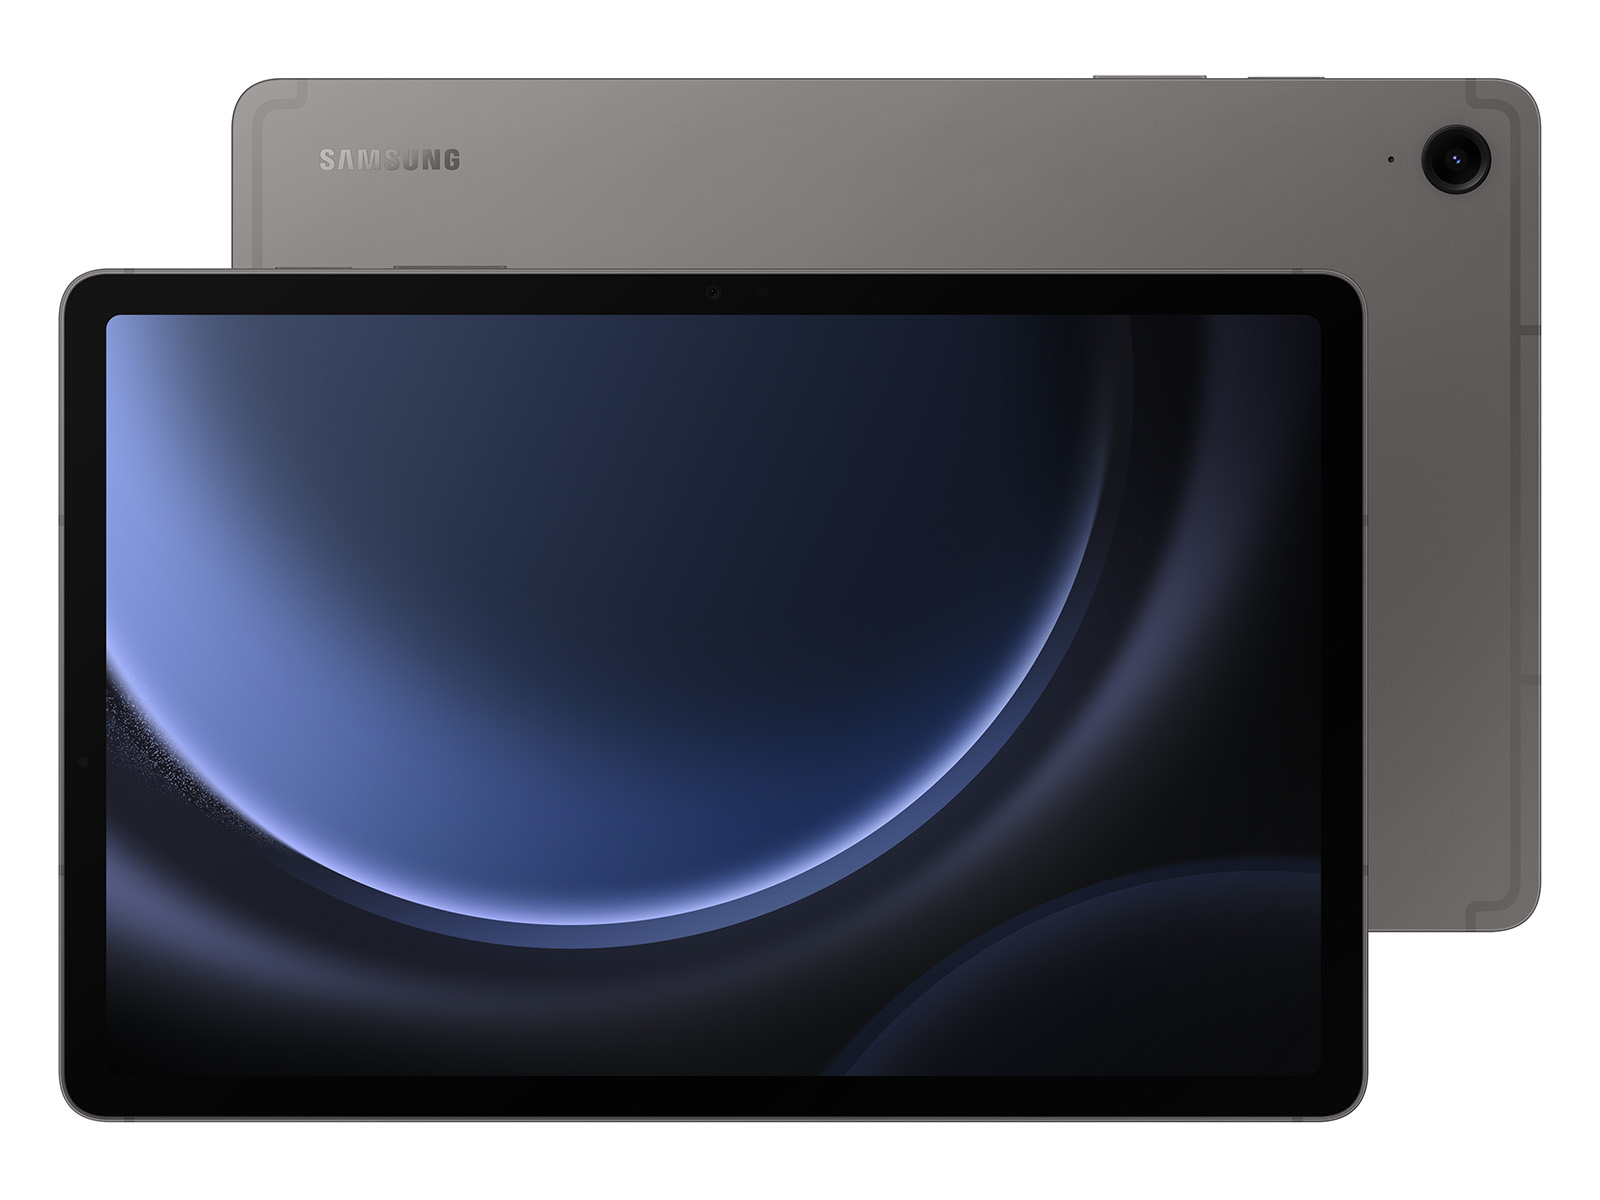 Galaxy Tab A 10.1 2019 32GB Black Wi Fi Tablets - SM-T510NZKAXAR 